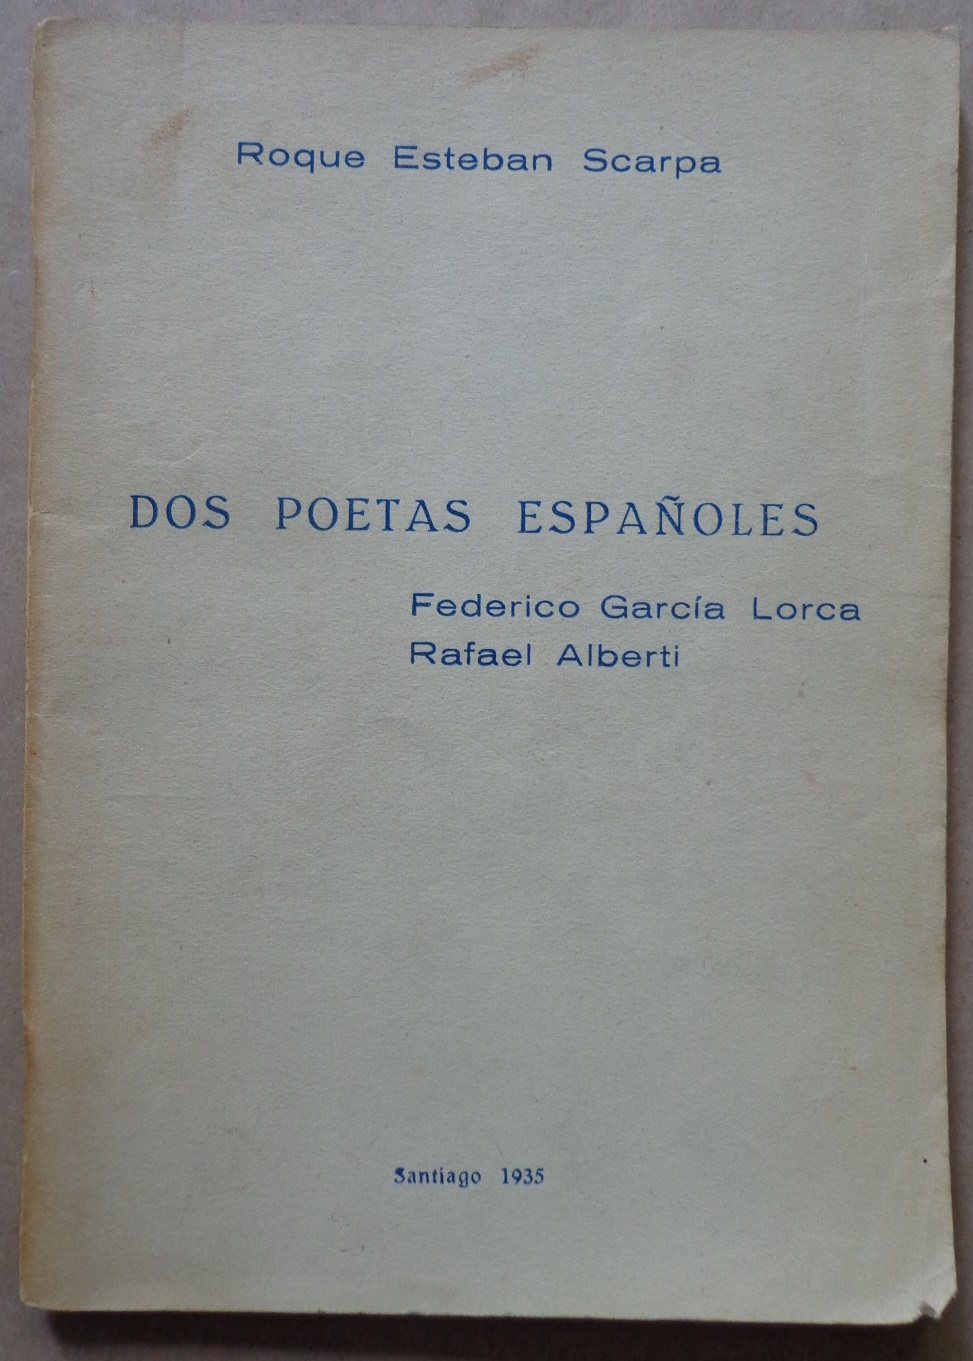 Roque Esteban Scarpa. Dos poetas españoles : Federico García Lorca, Rafael Alberti